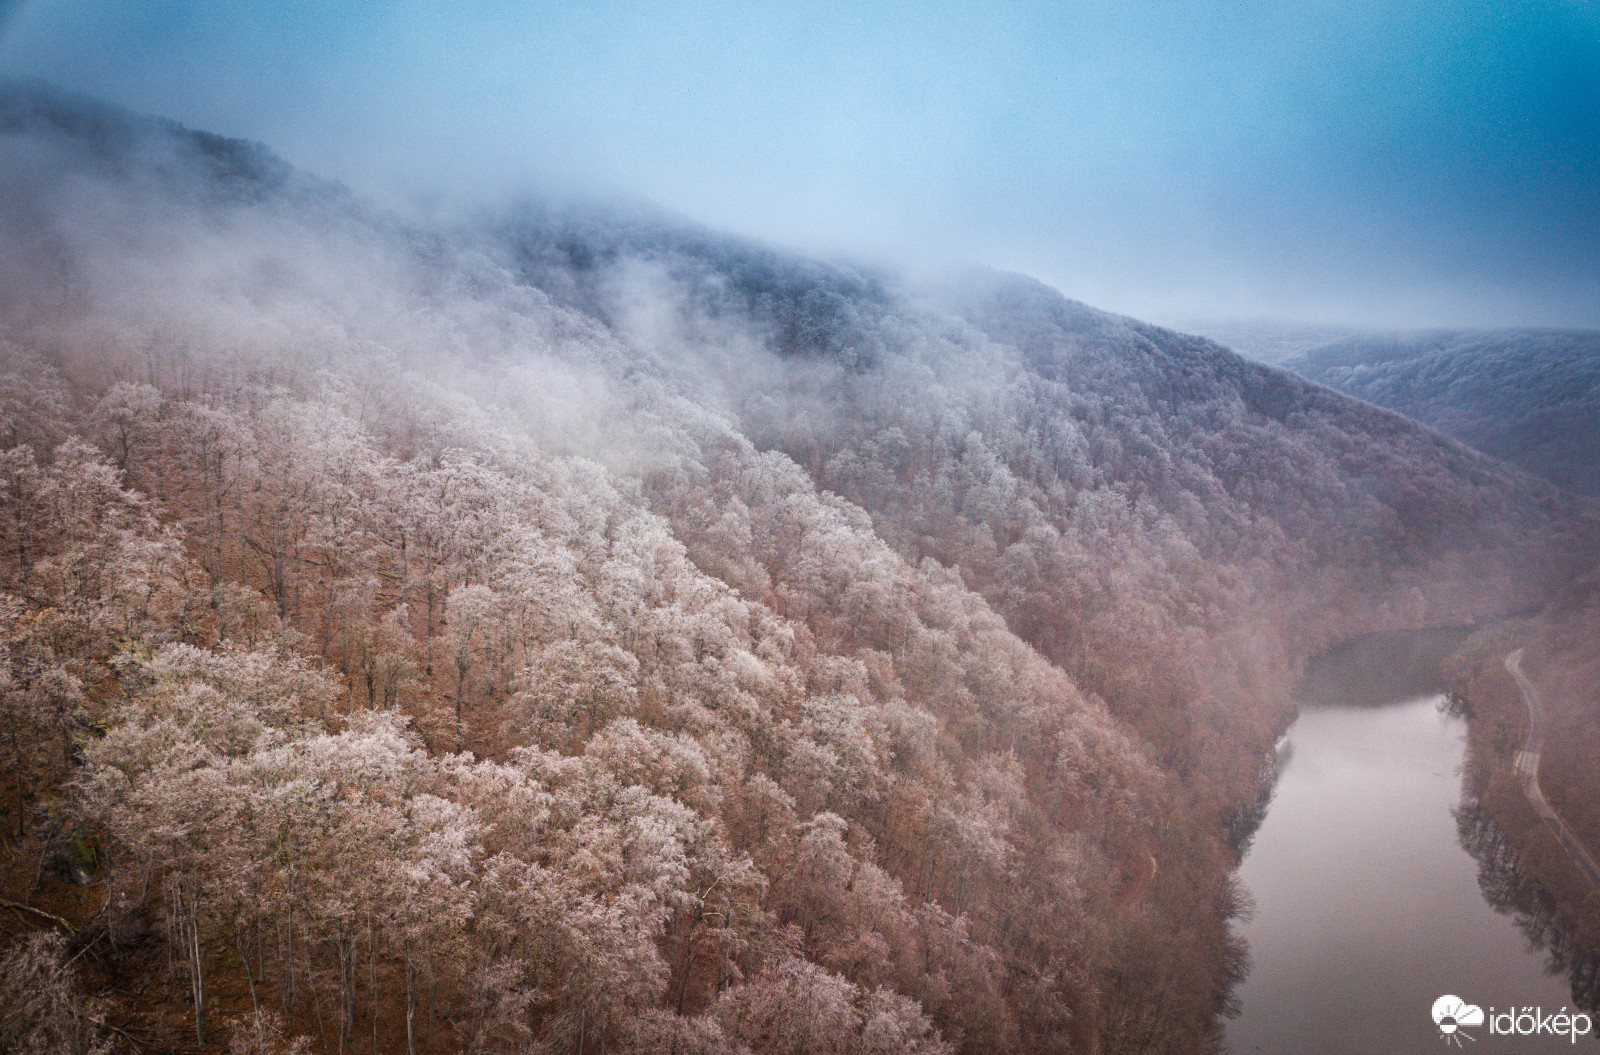 Köd és fagy, Hámori-tó 